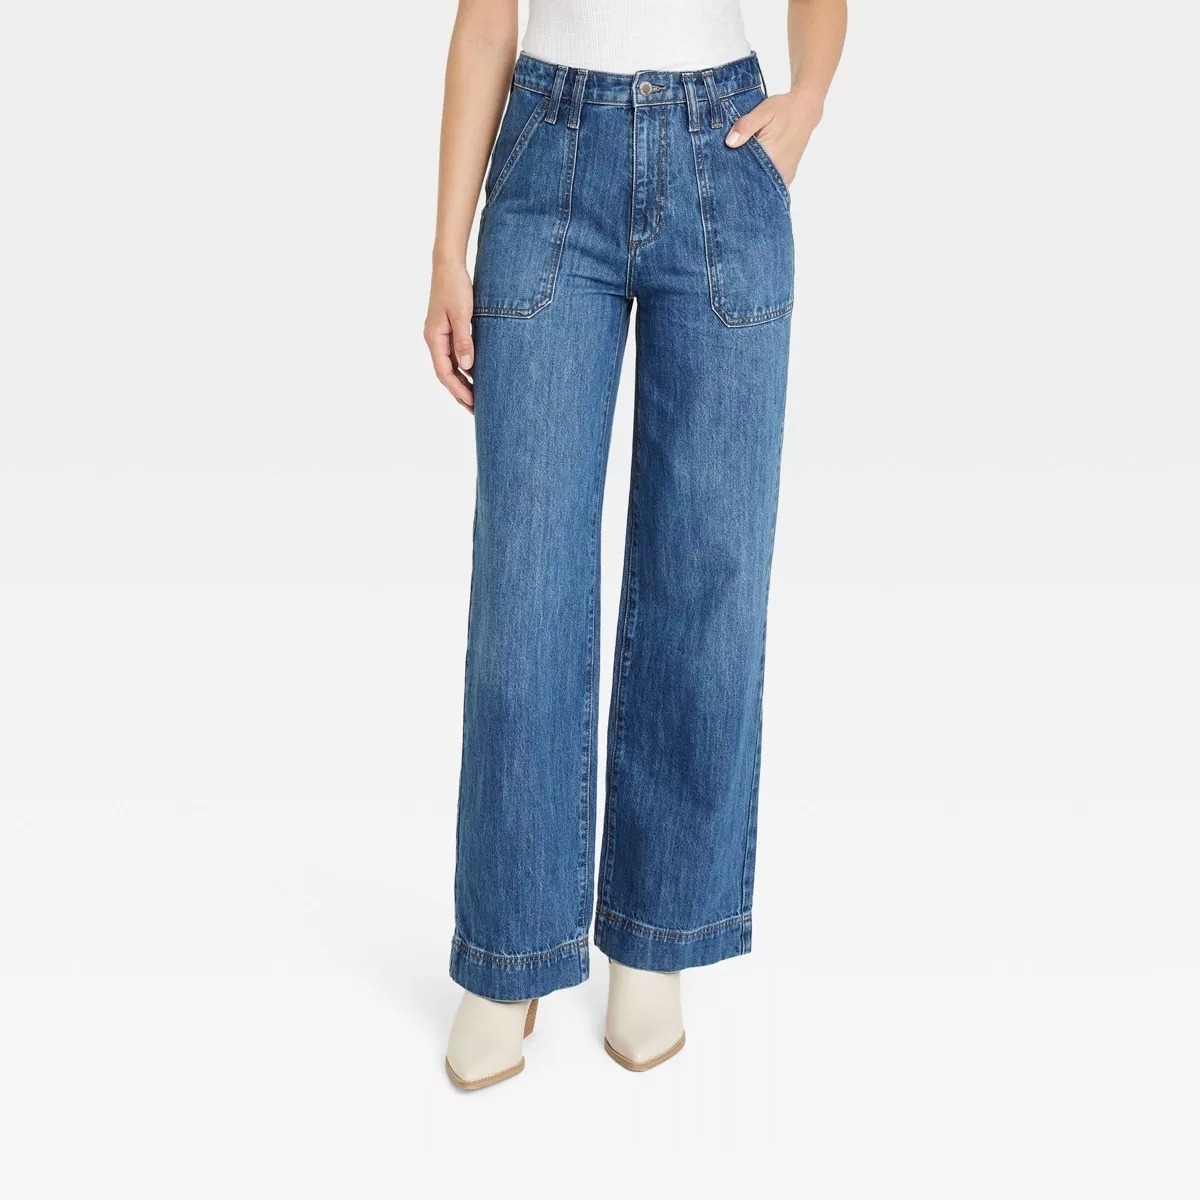 high rise denim jeans on model